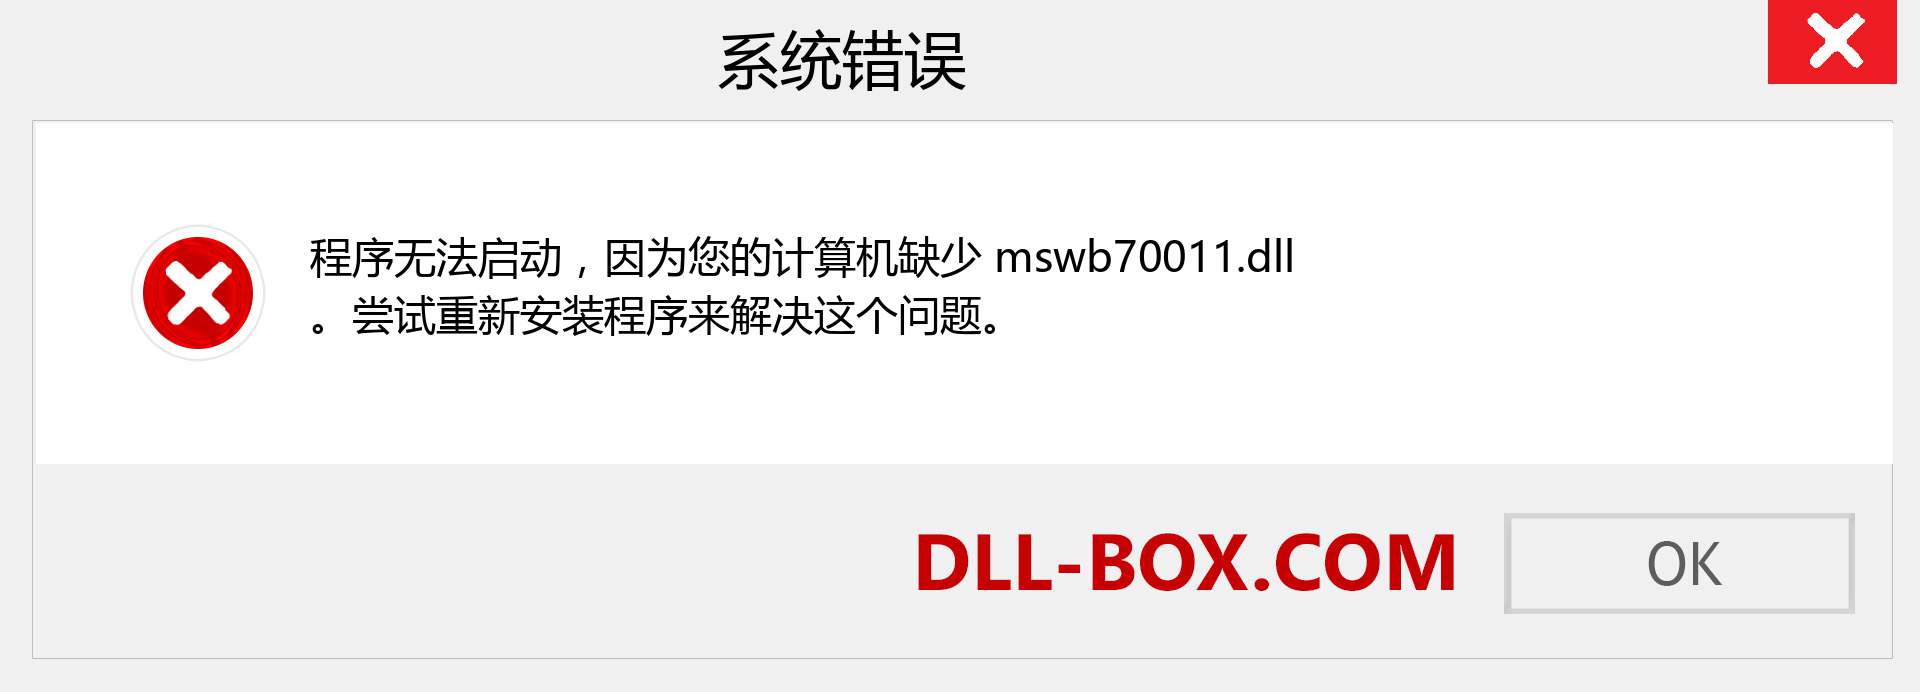 mswb70011.dll 文件丢失？。 适用于 Windows 7、8、10 的下载 - 修复 Windows、照片、图像上的 mswb70011 dll 丢失错误